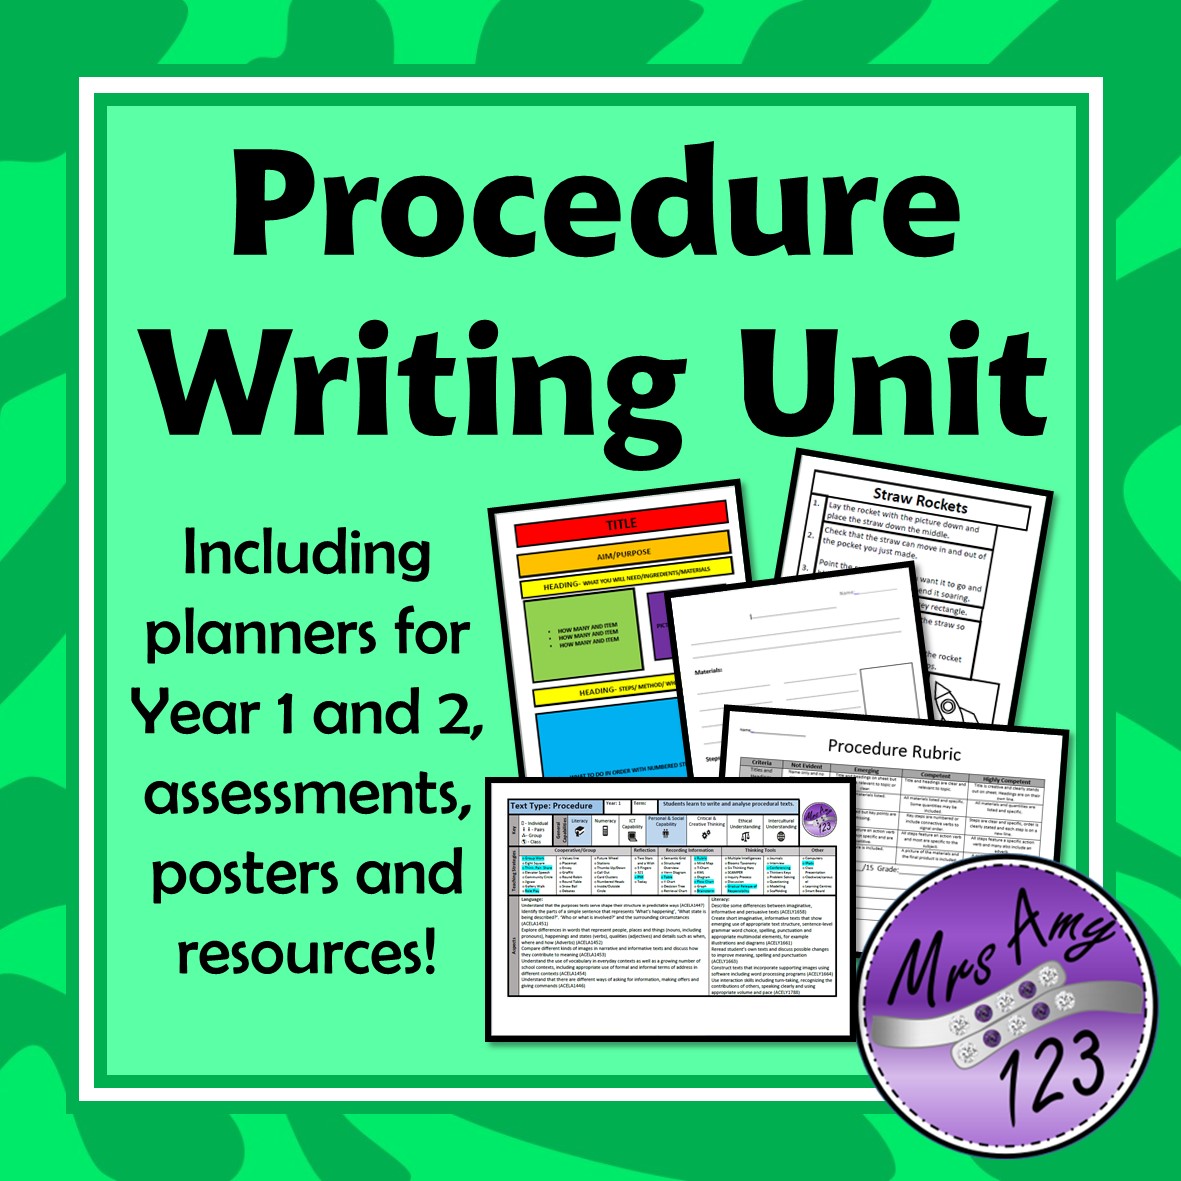 Написать units. Written procedures. Writing process.